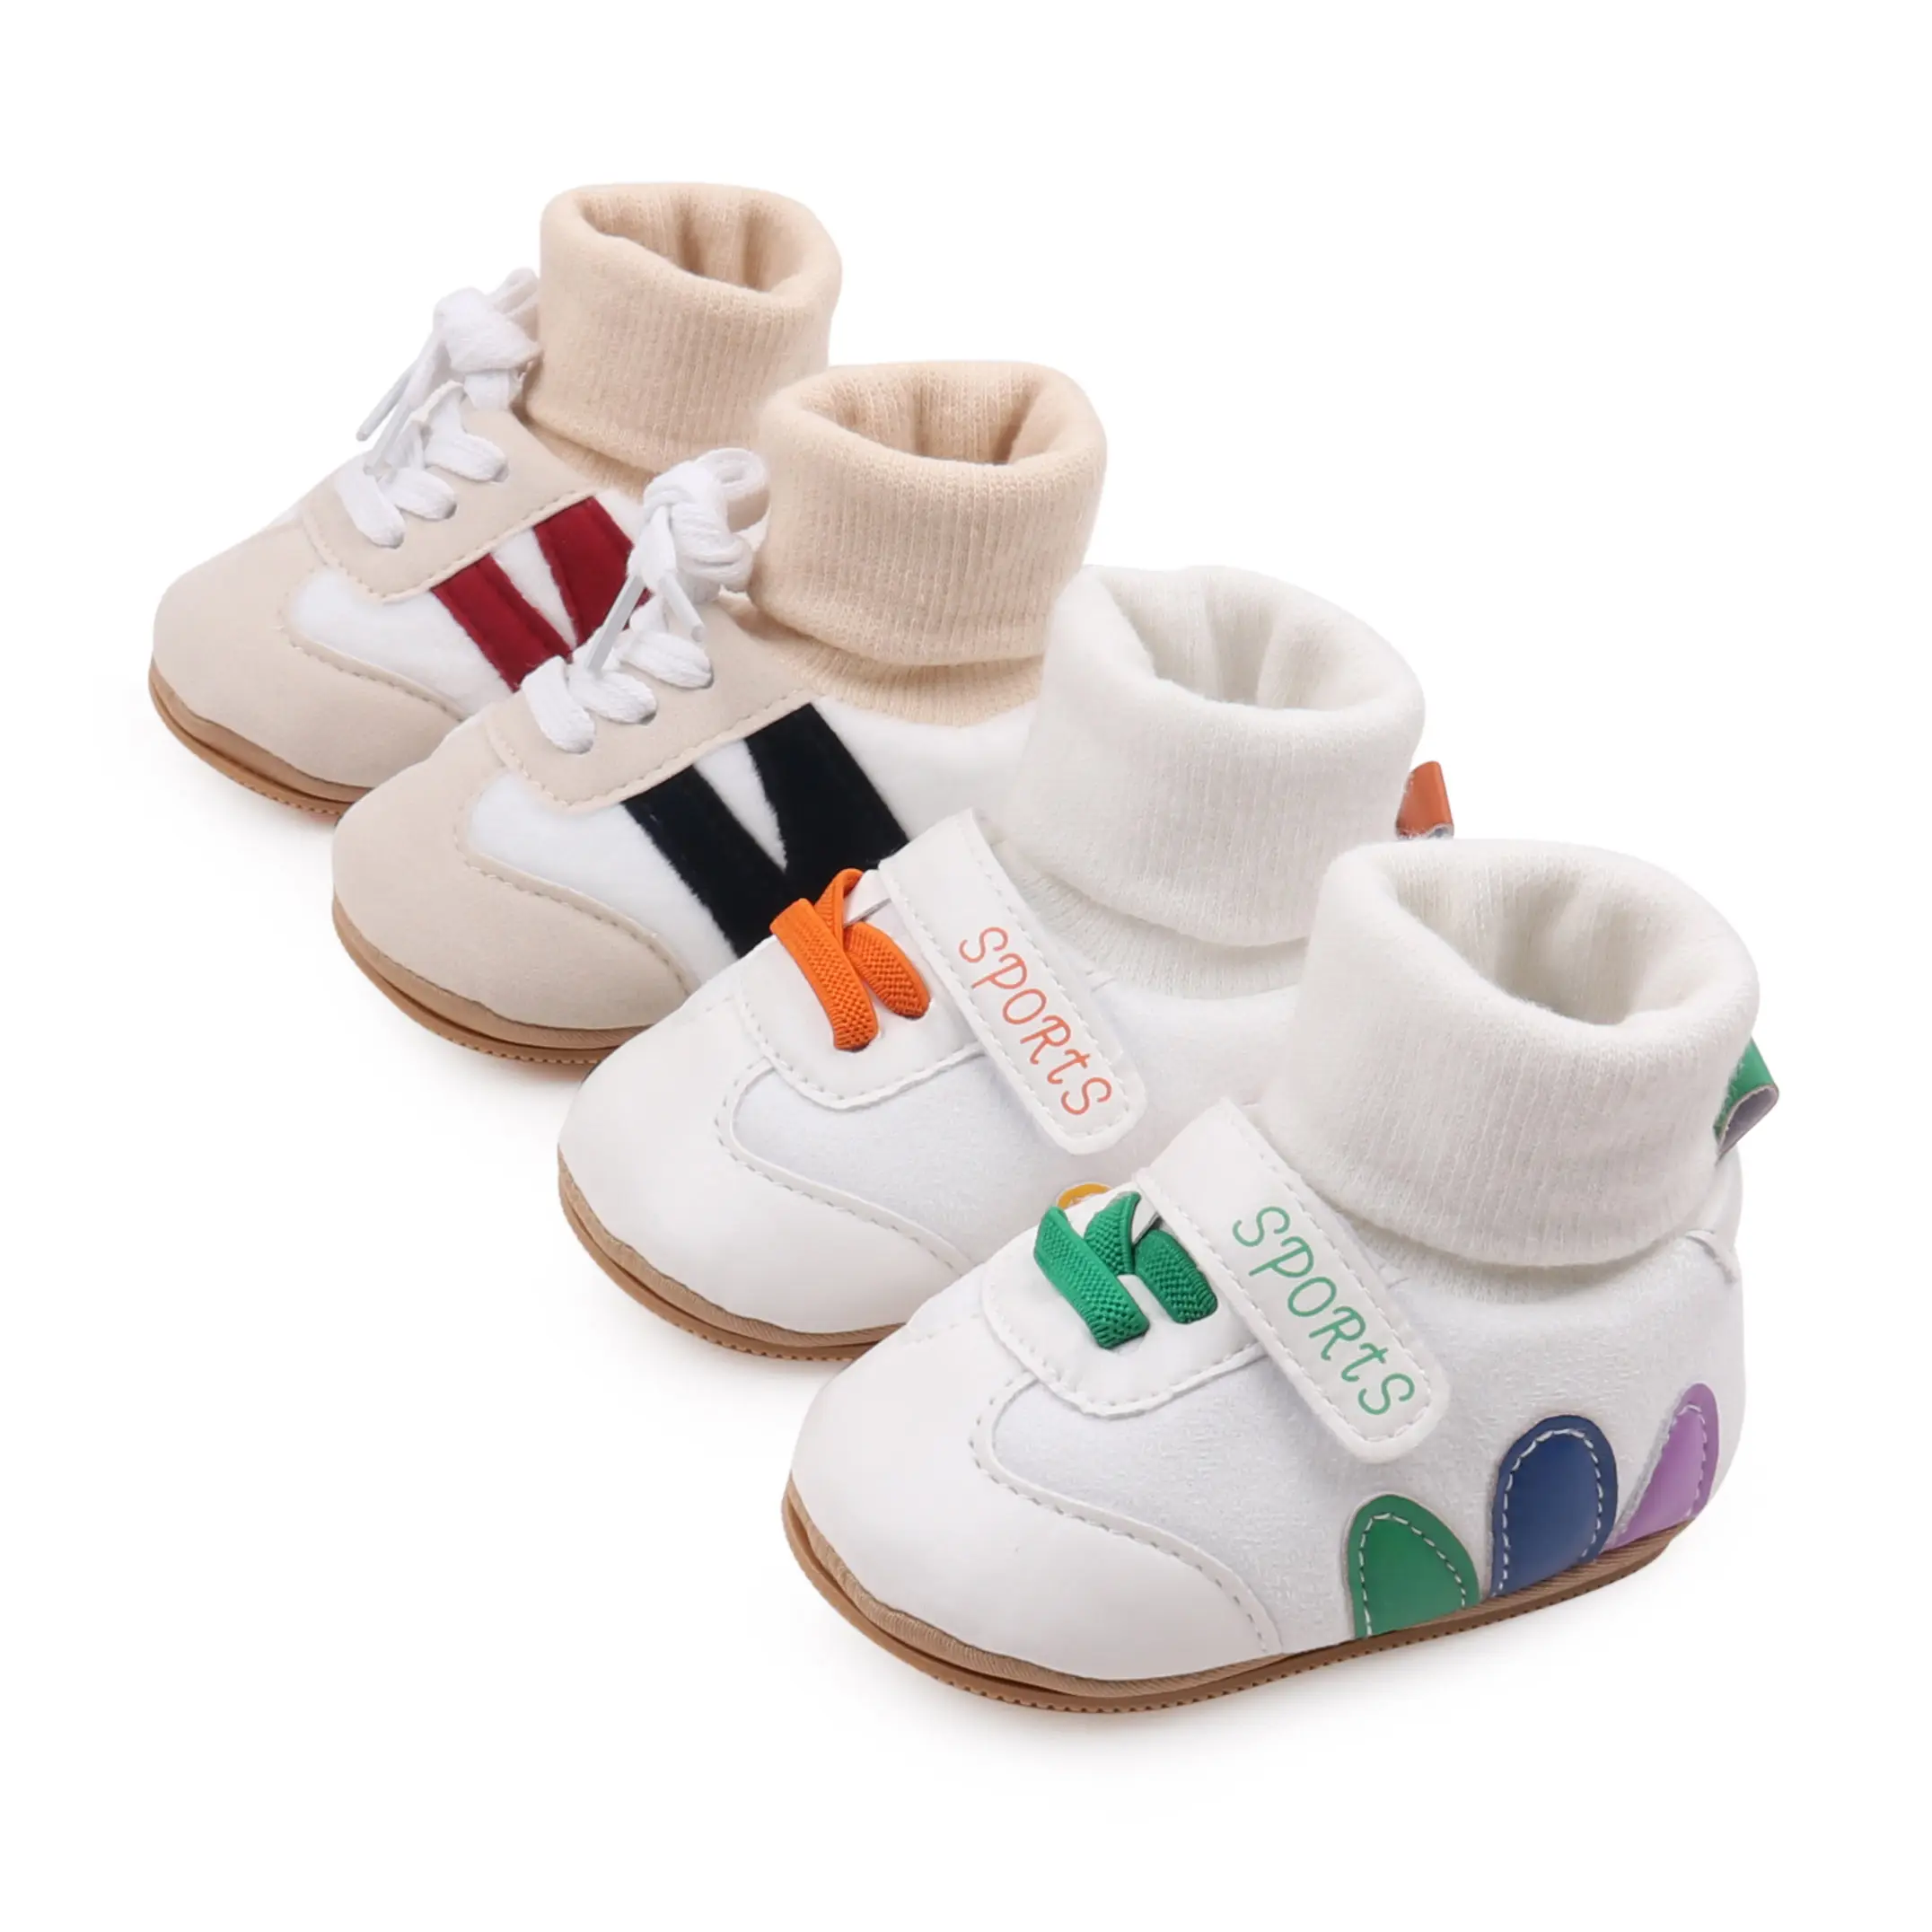 Medias de invierno para bebés, zapatos gruesos y cálidos para bebés de 0 a 1 año, zapatos para caminar para bebés